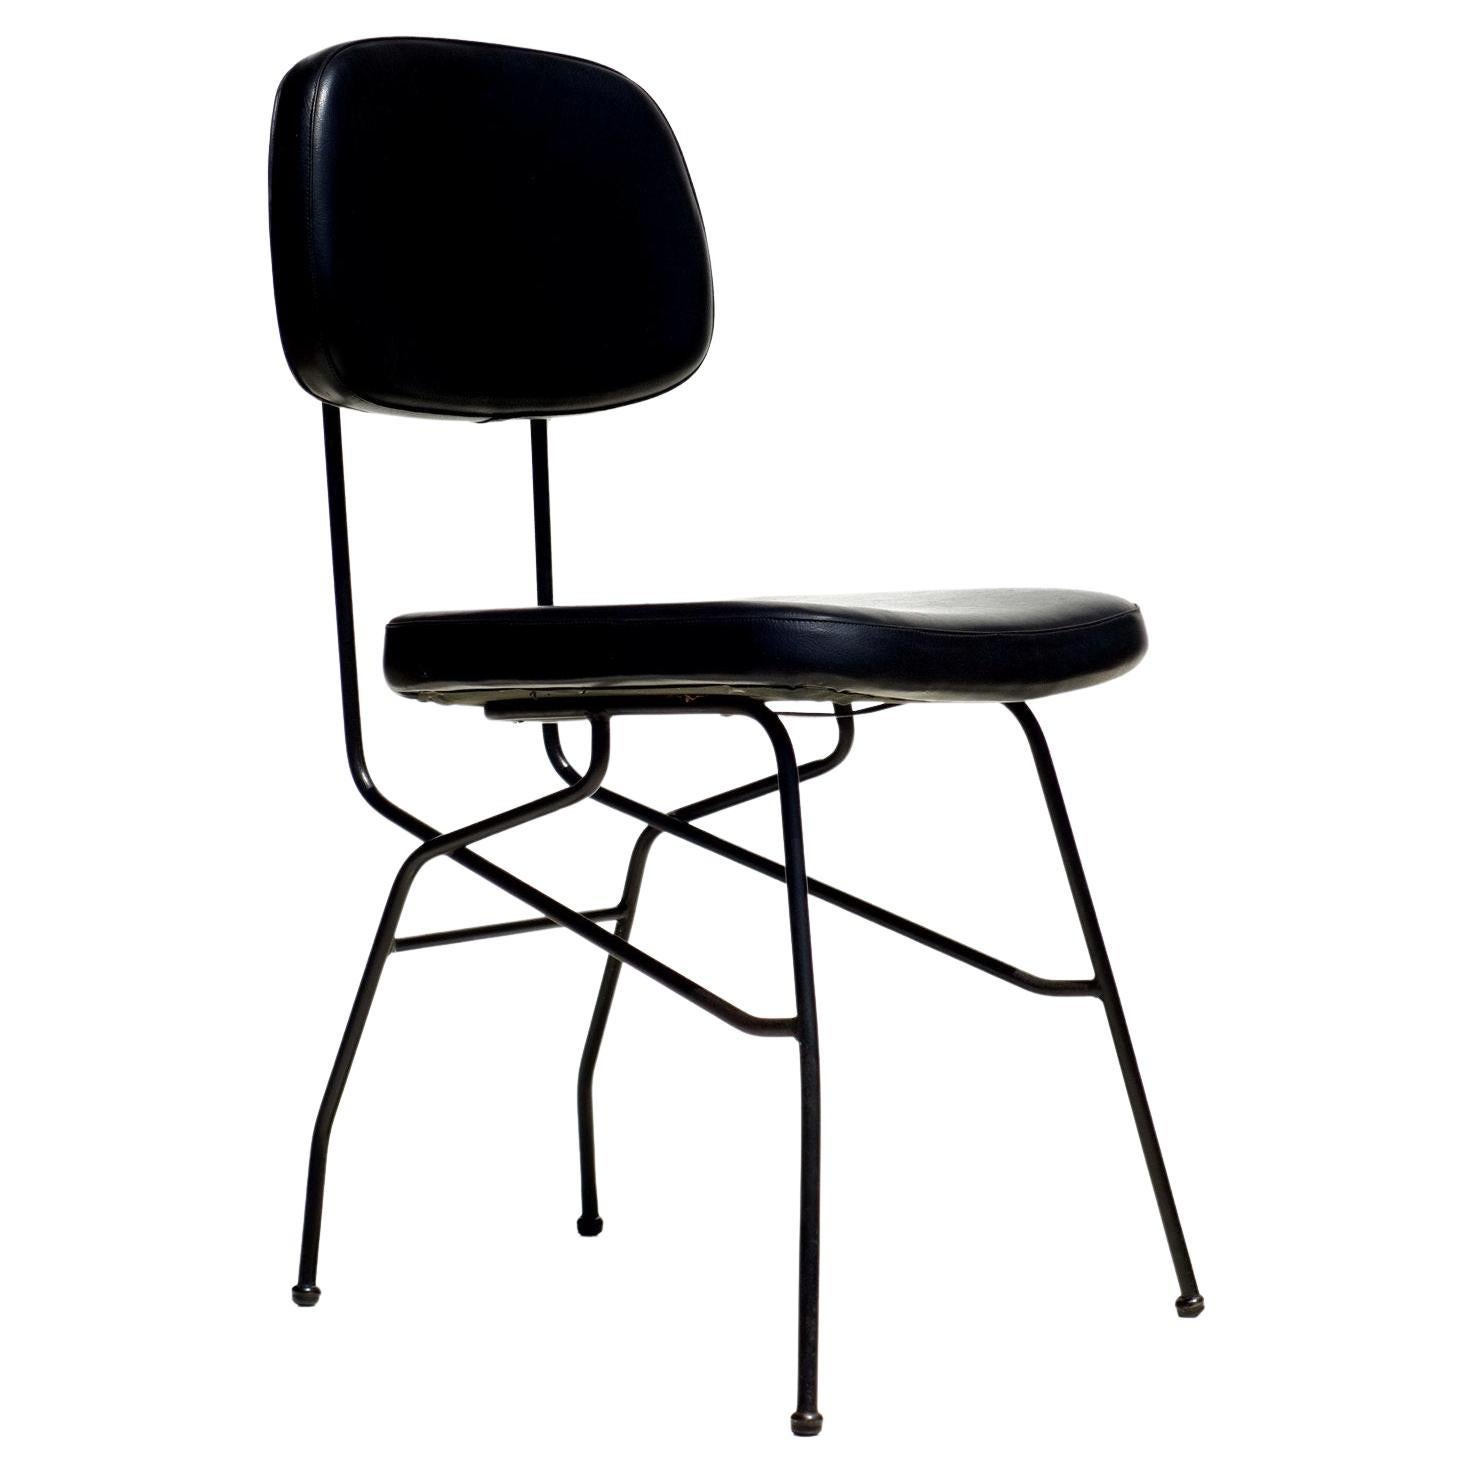 années 1950 par Gastone Rinaldi 
pour RIMA midcentury

Paire de chaises 
le ciel noir et le métal noir.